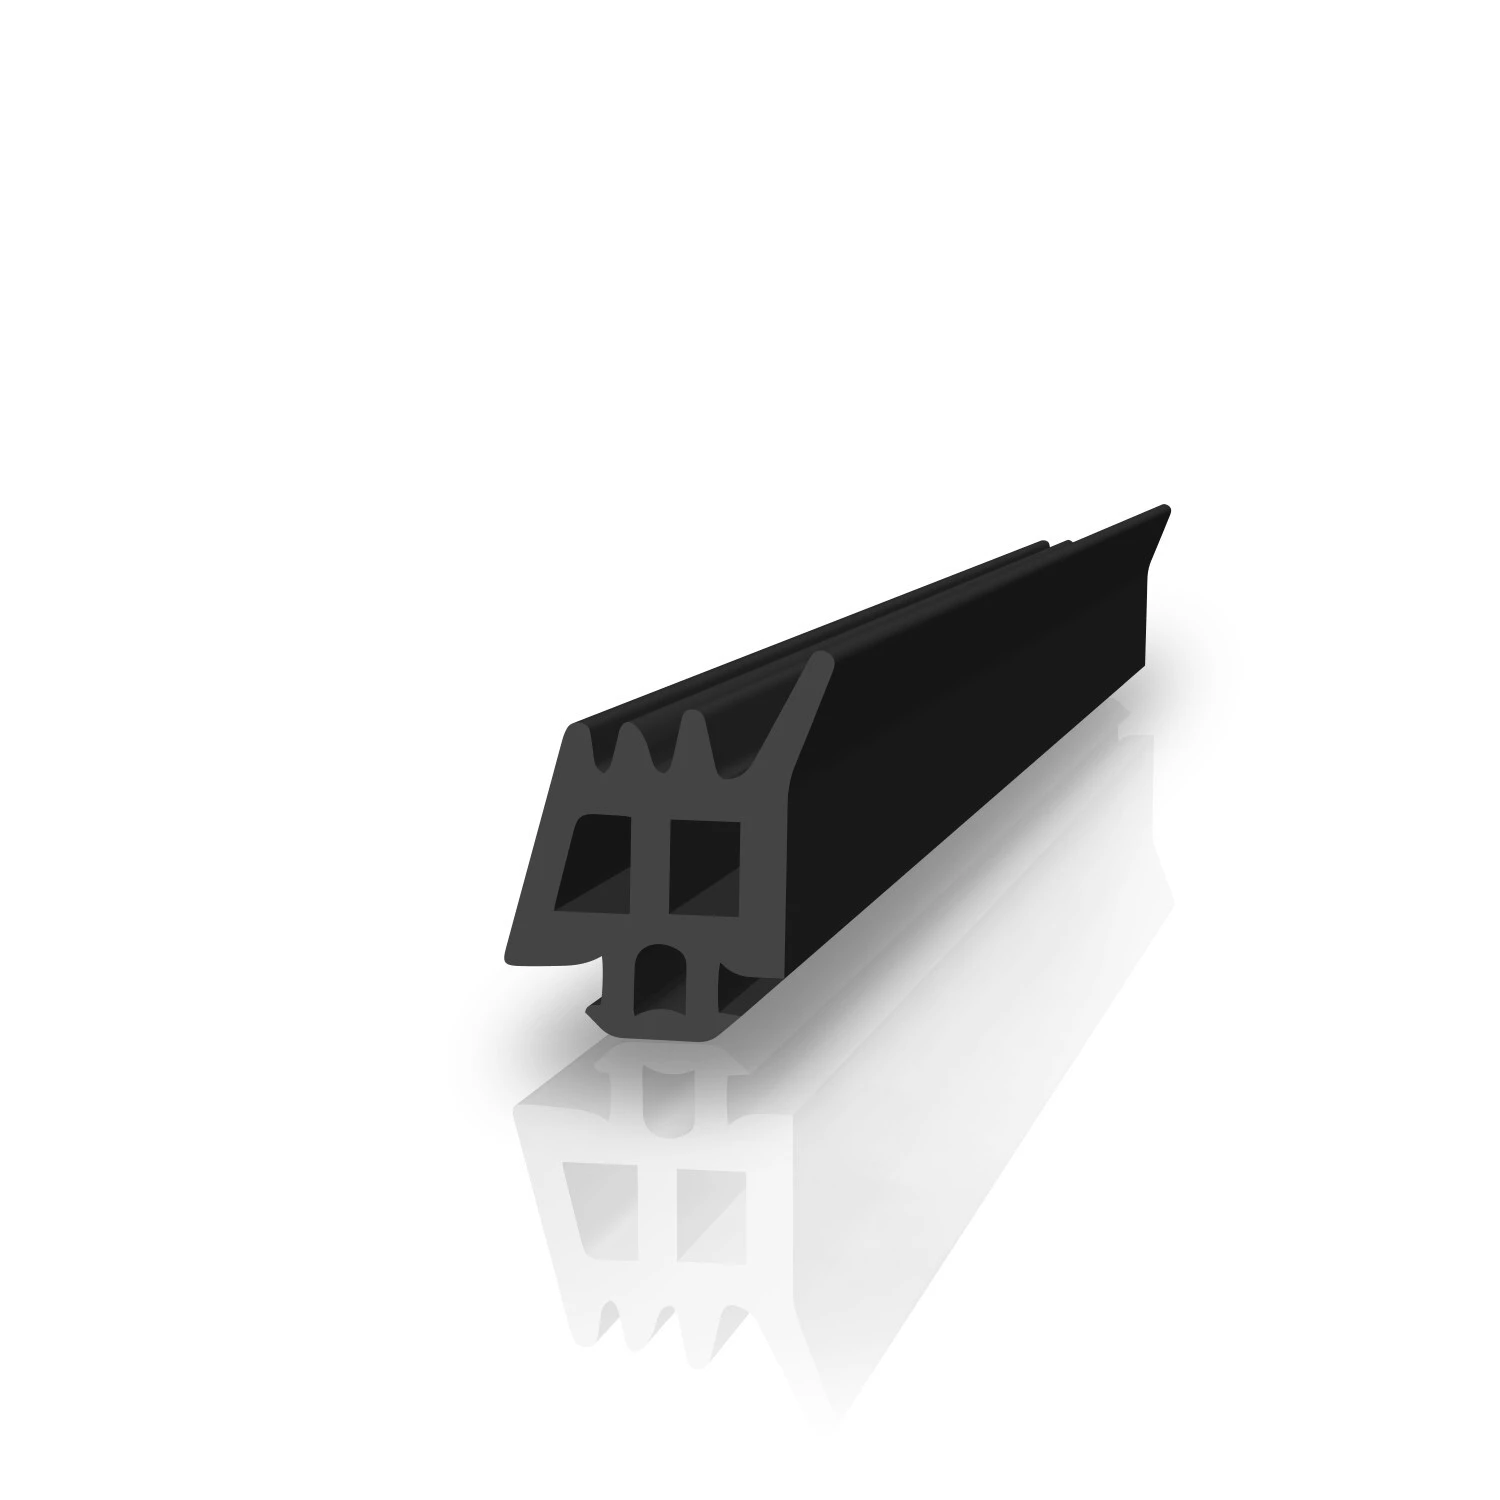 Anschlagdichtung mit Lippe für Schüco | 14 mm Höhe | Farbe: schwarz 